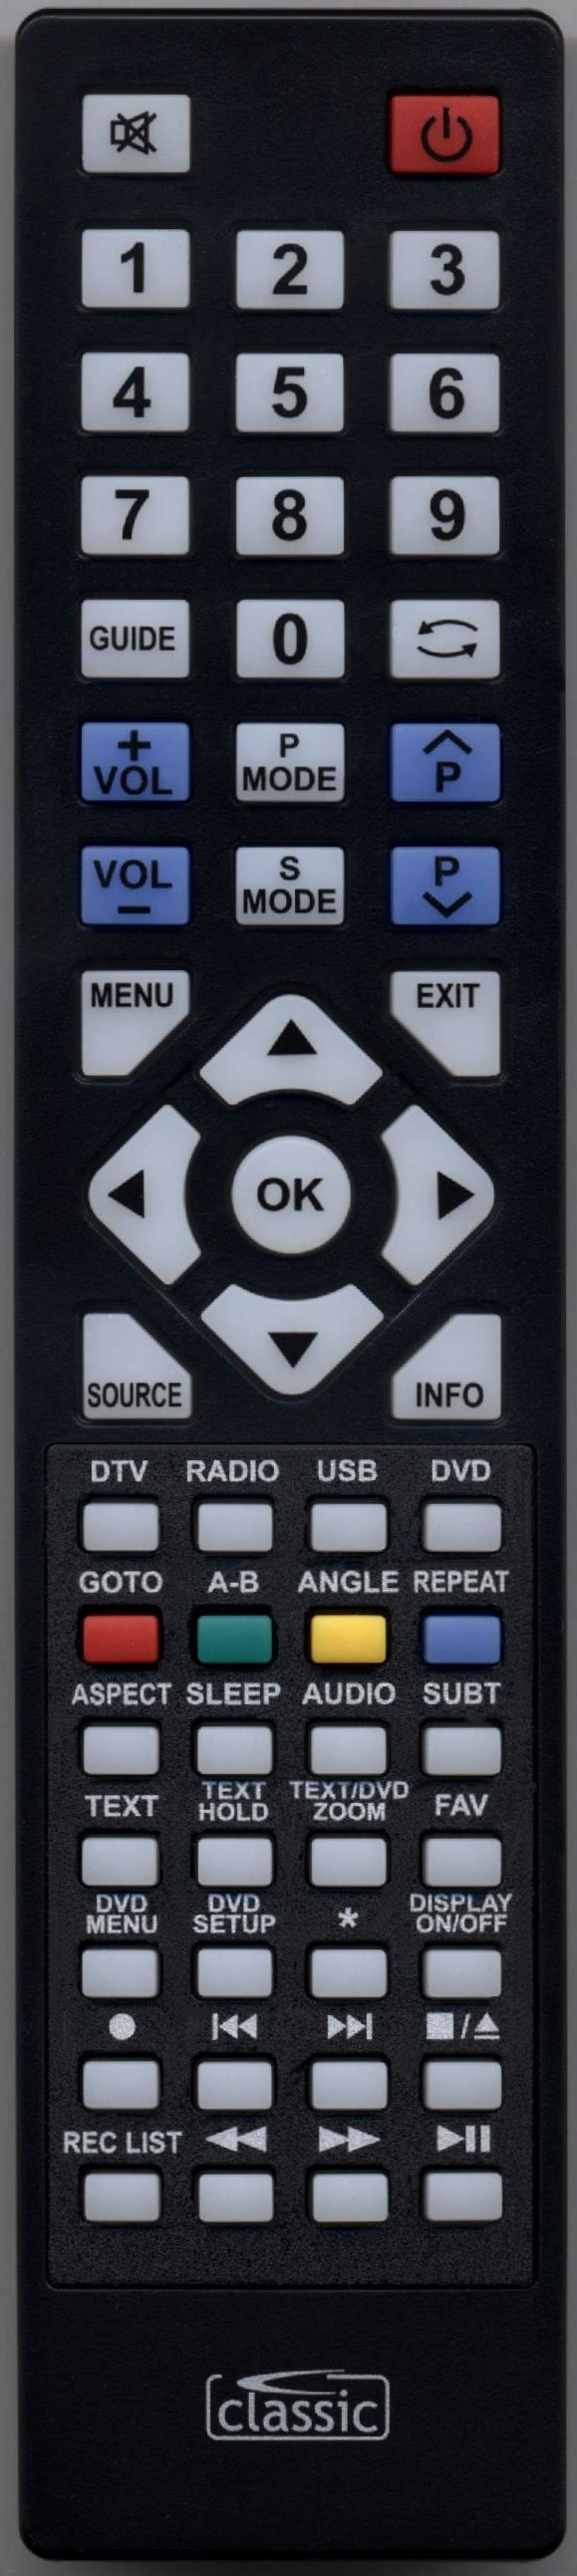 UMC 32G22B-HD/DVD Remote Control